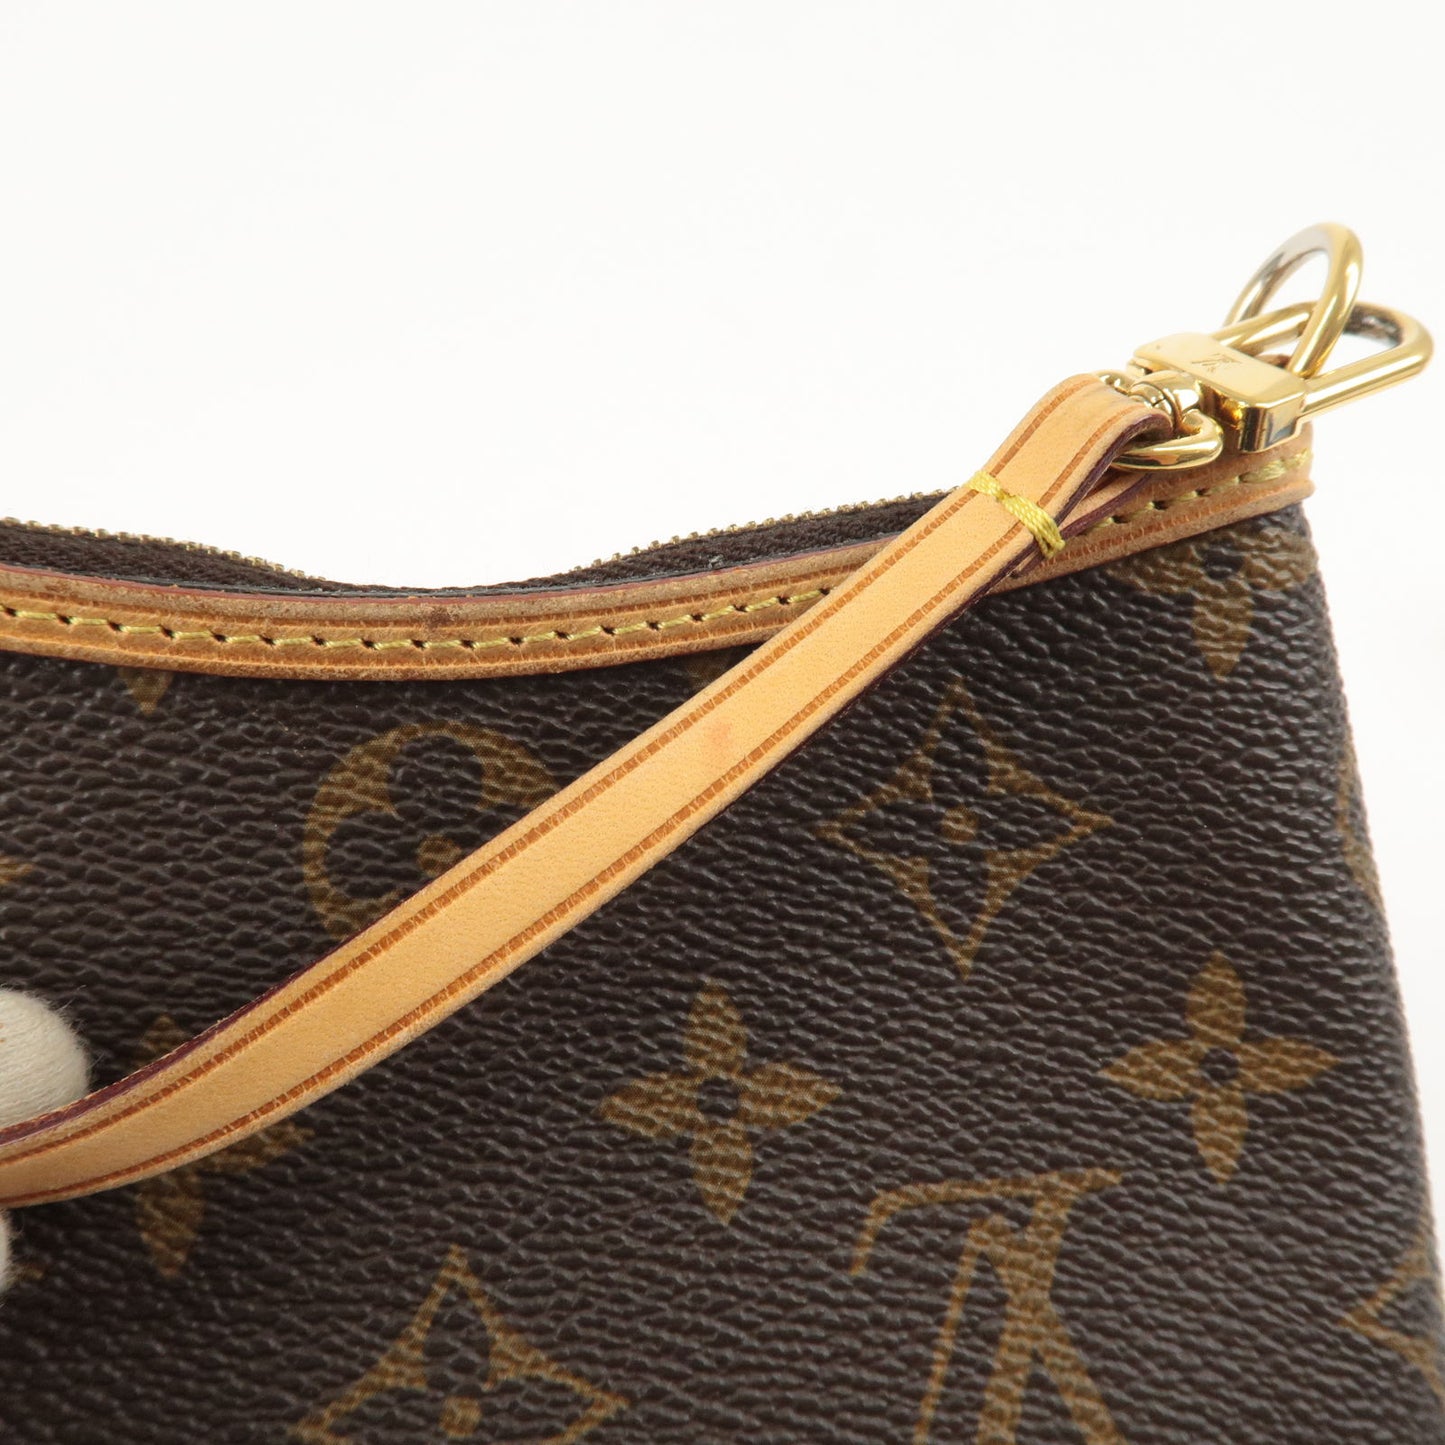 Louis Vuitton, Bags, Gorgeous Louis Vuitton Pochette Delightful Mini  Pouch Great Condition